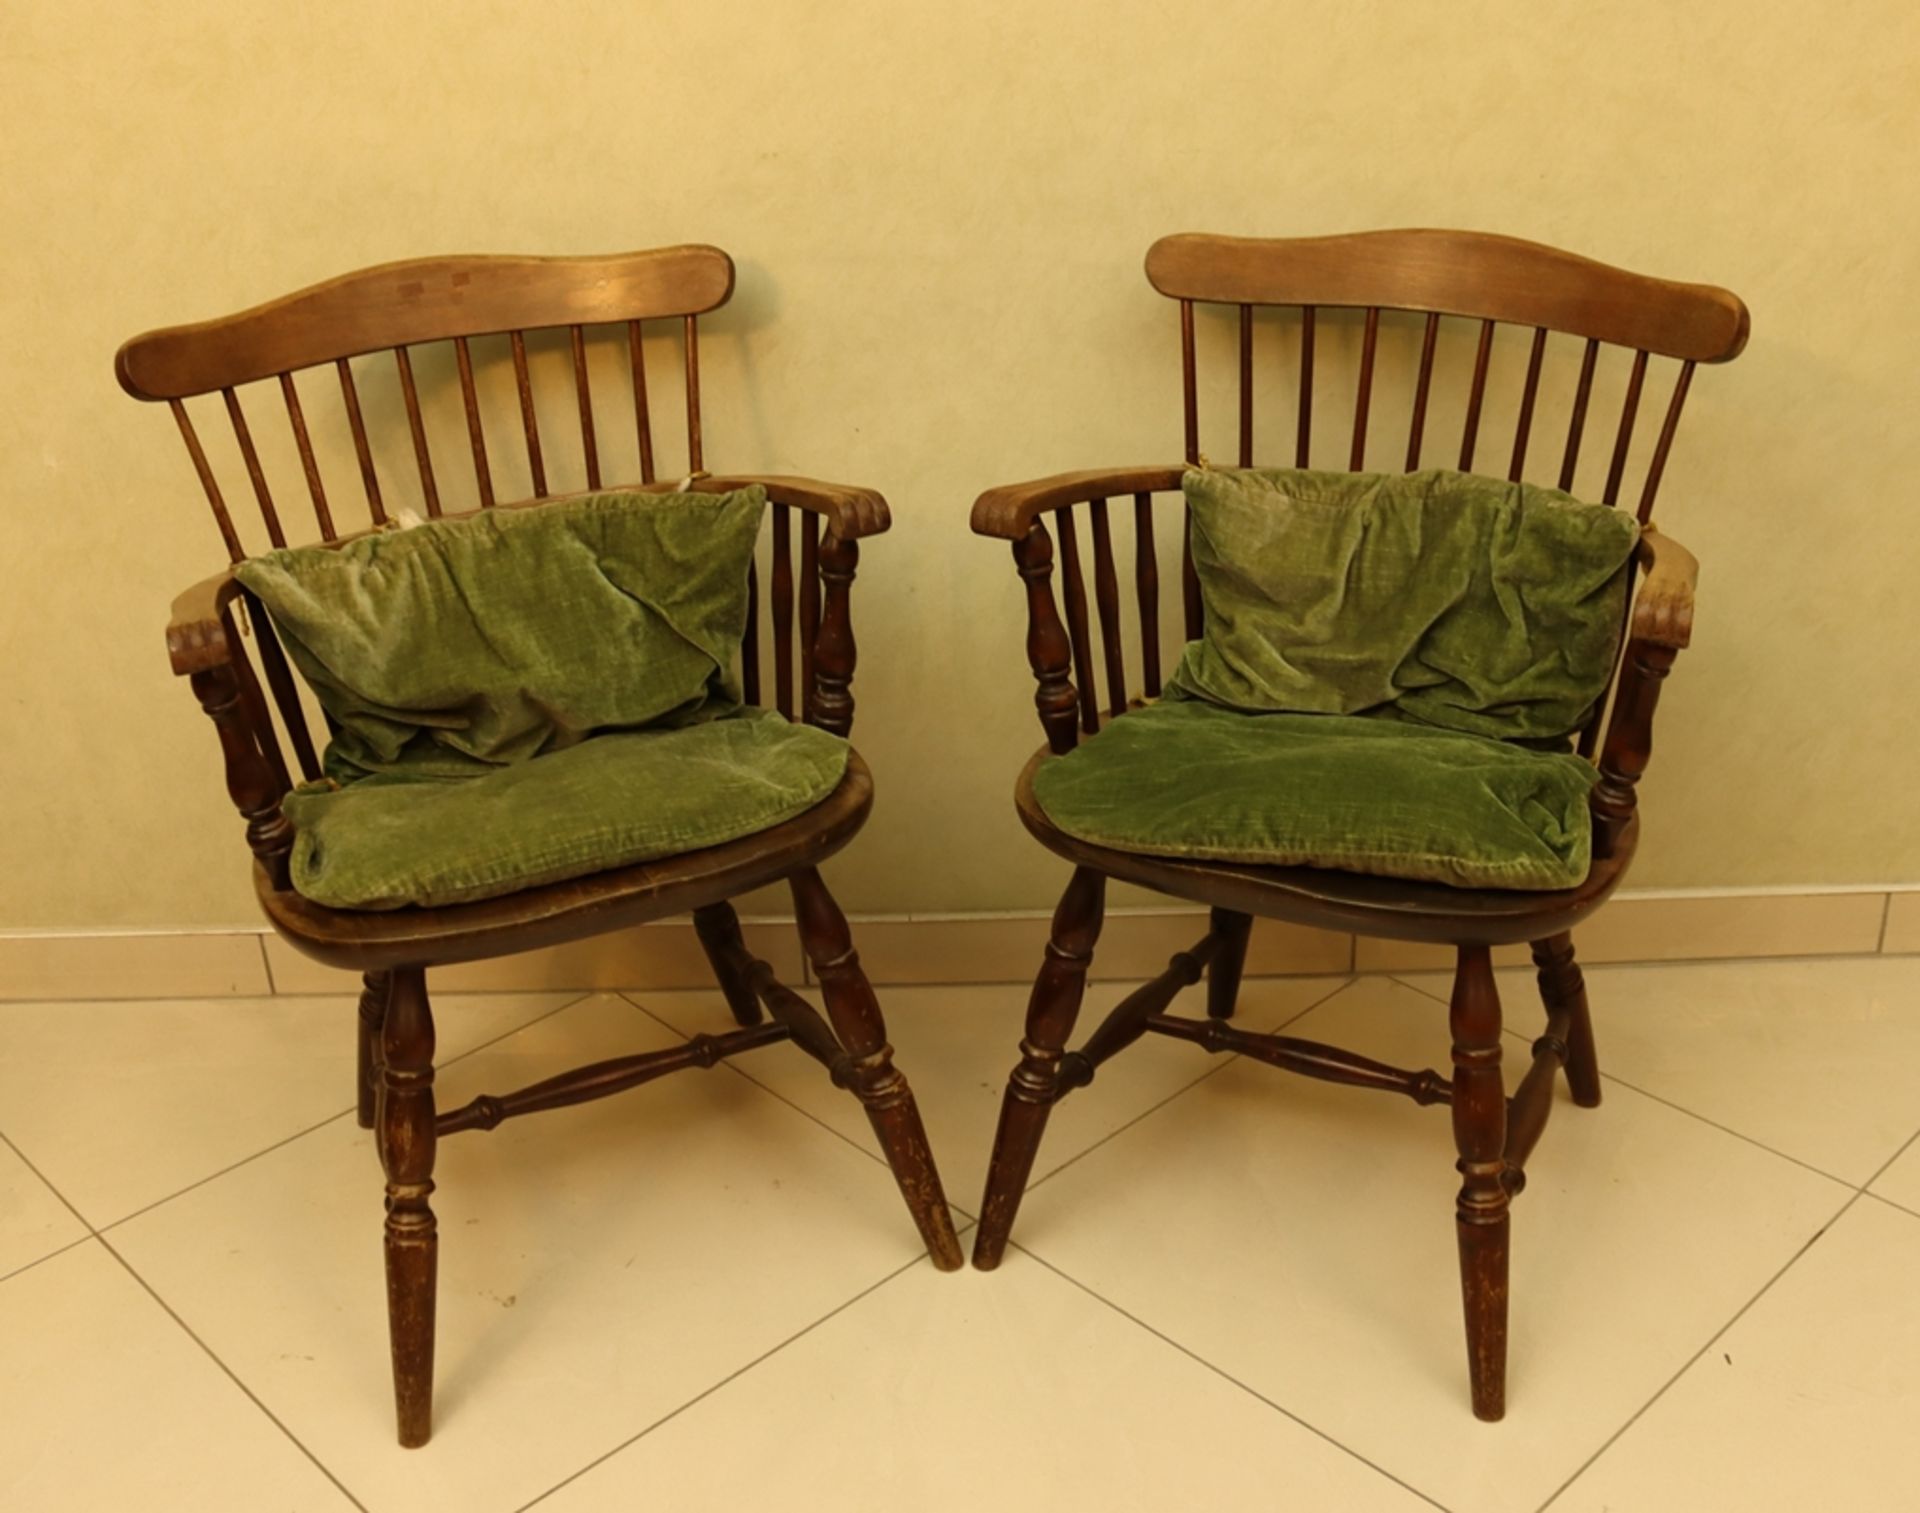 Paar engl. Armlehnstühle sog. Windsor Stühle, Buchenholz massiv, im originalen Zustand, Bezug wohl  - Bild 2 aus 3